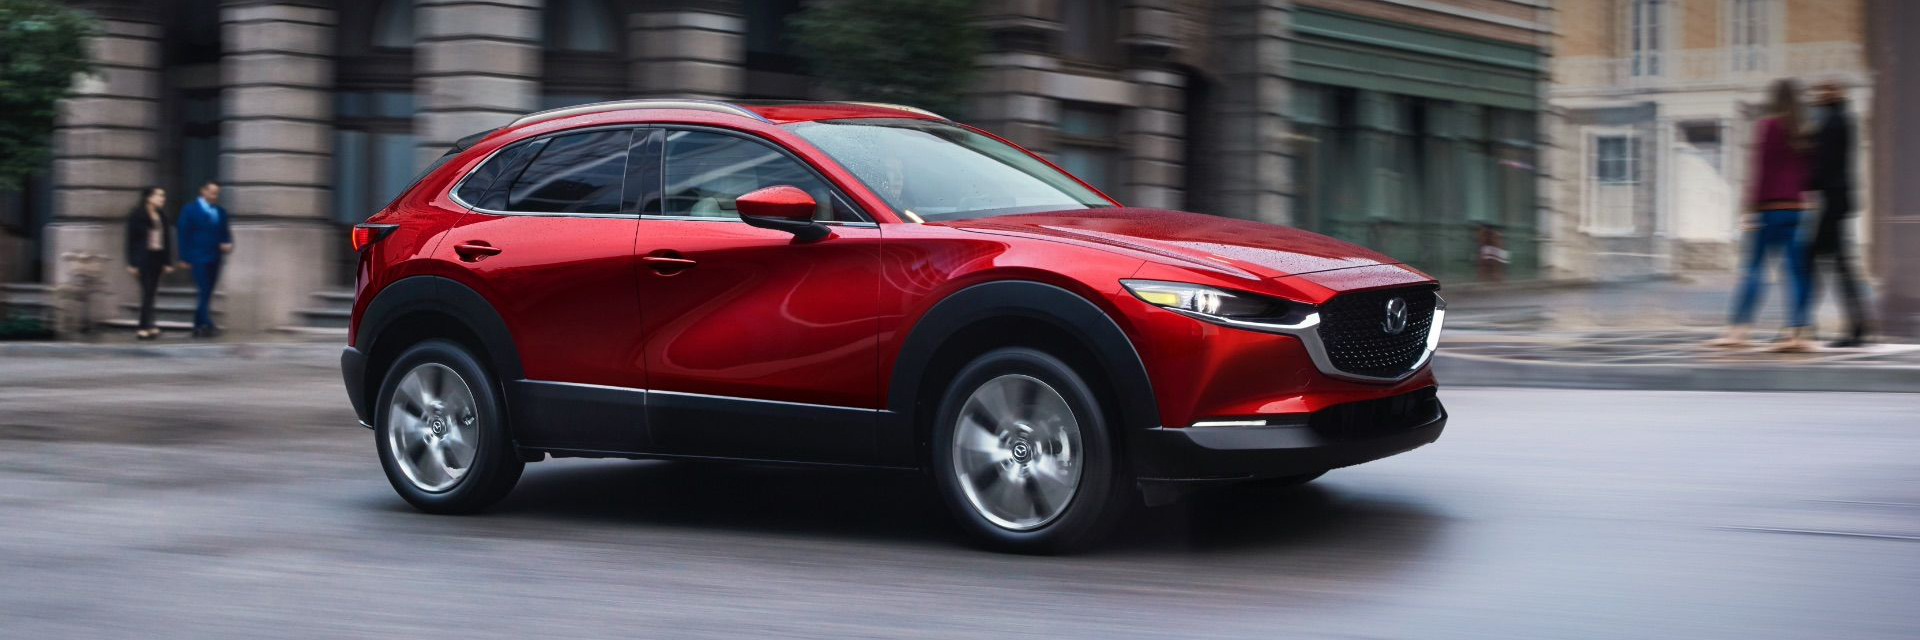 Mazda MX-30, carros usados, carros novos, carros de serviço